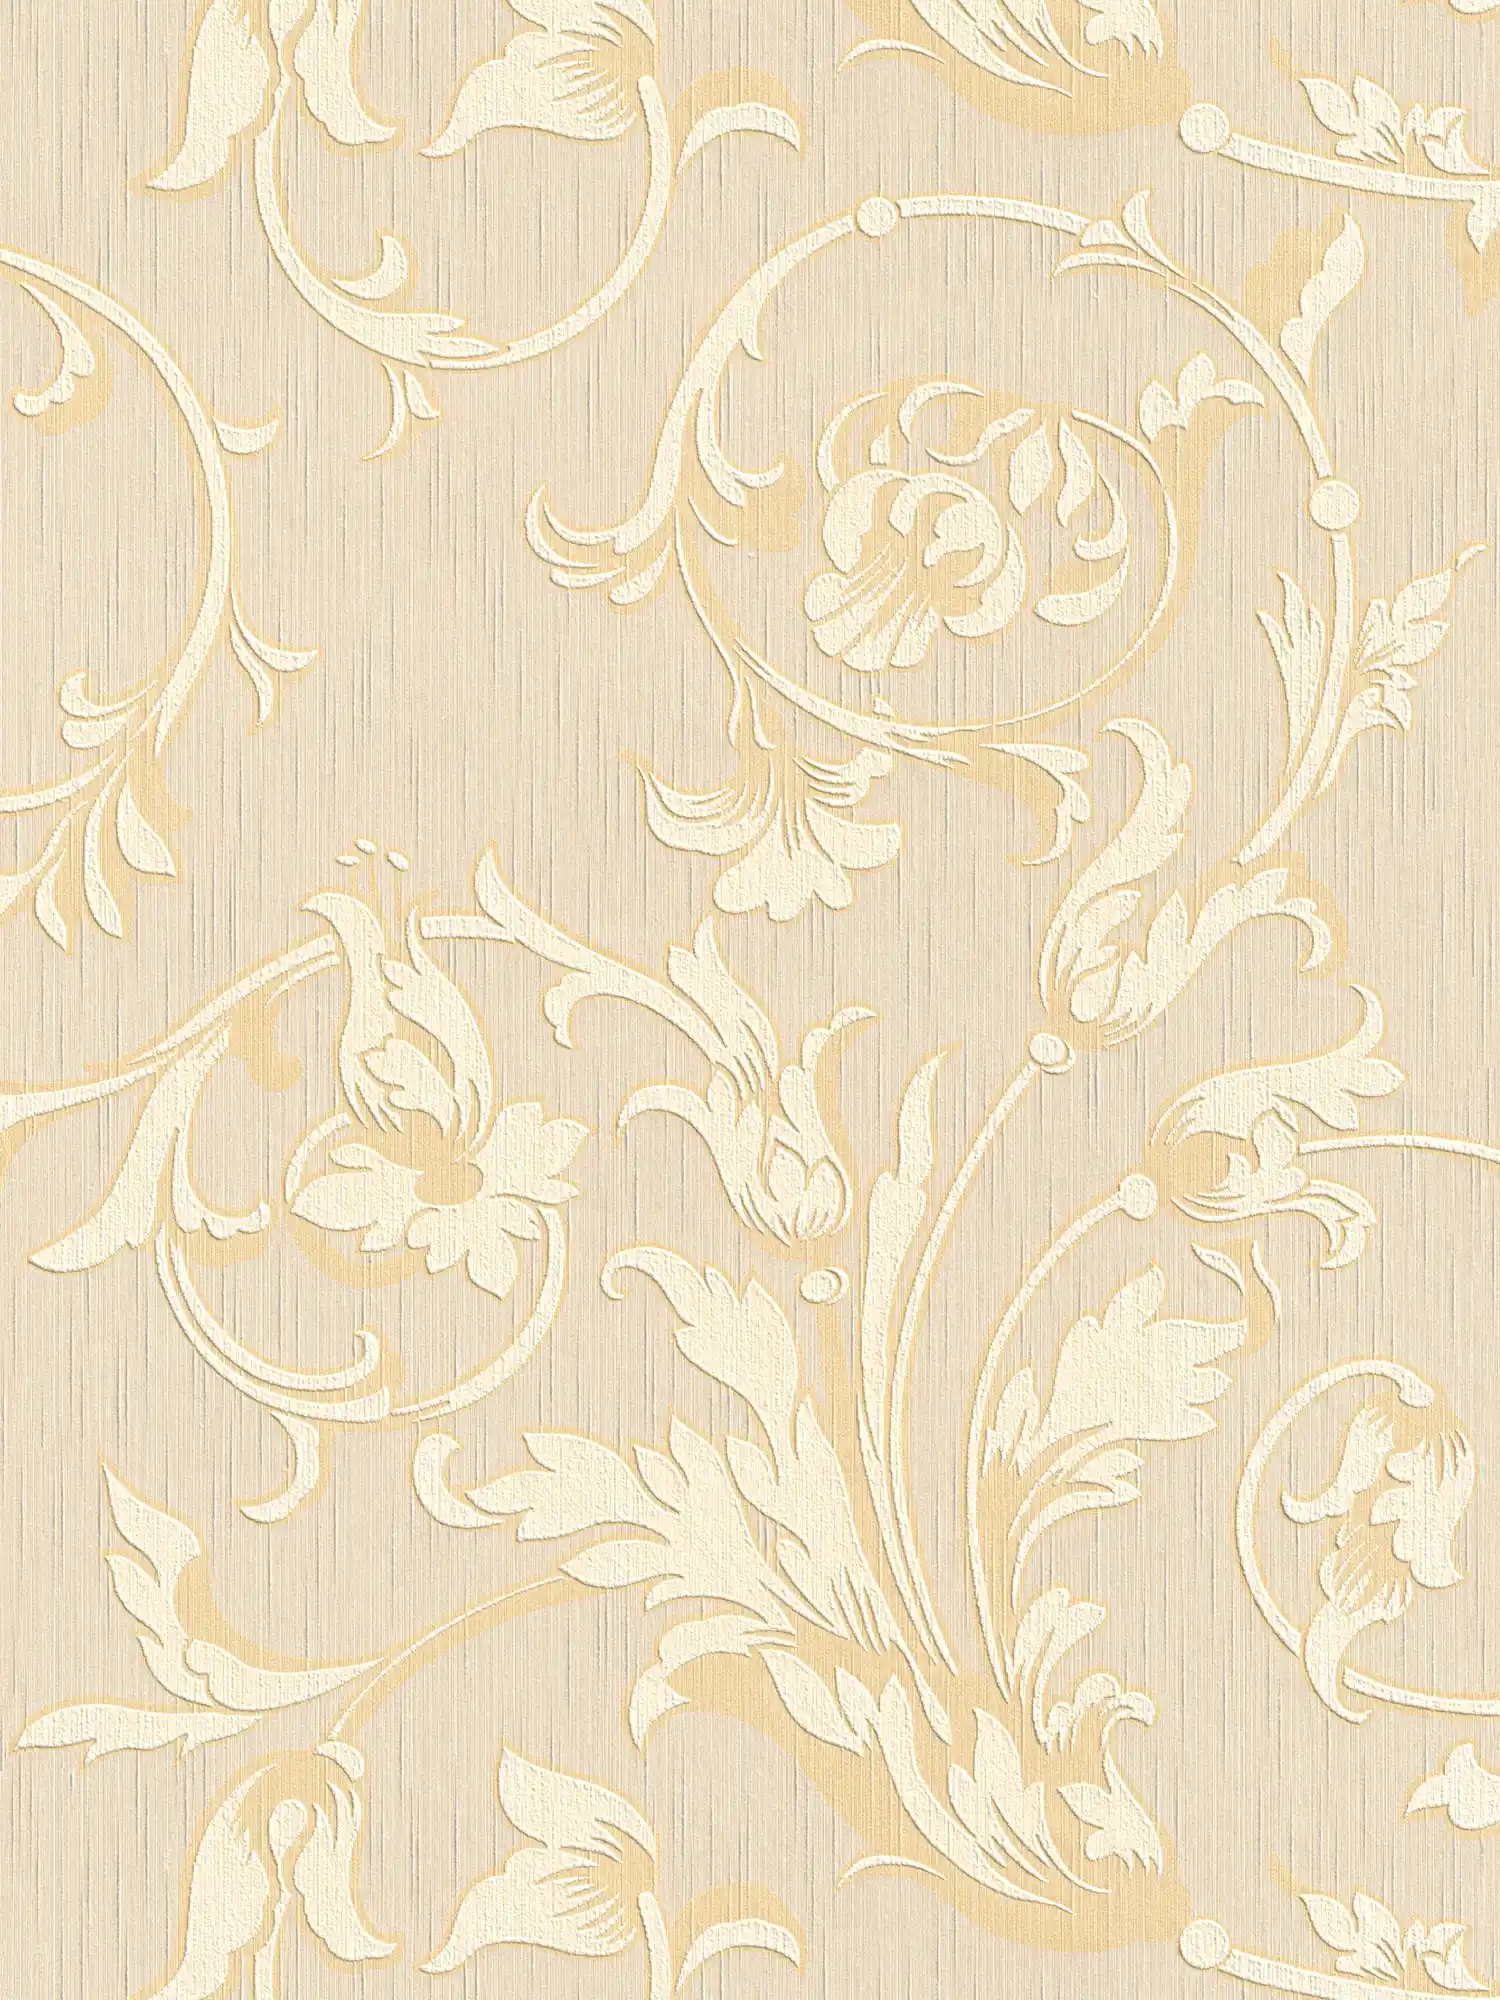 papier peint en papier ornemental aspect soie - crème, or, beige
